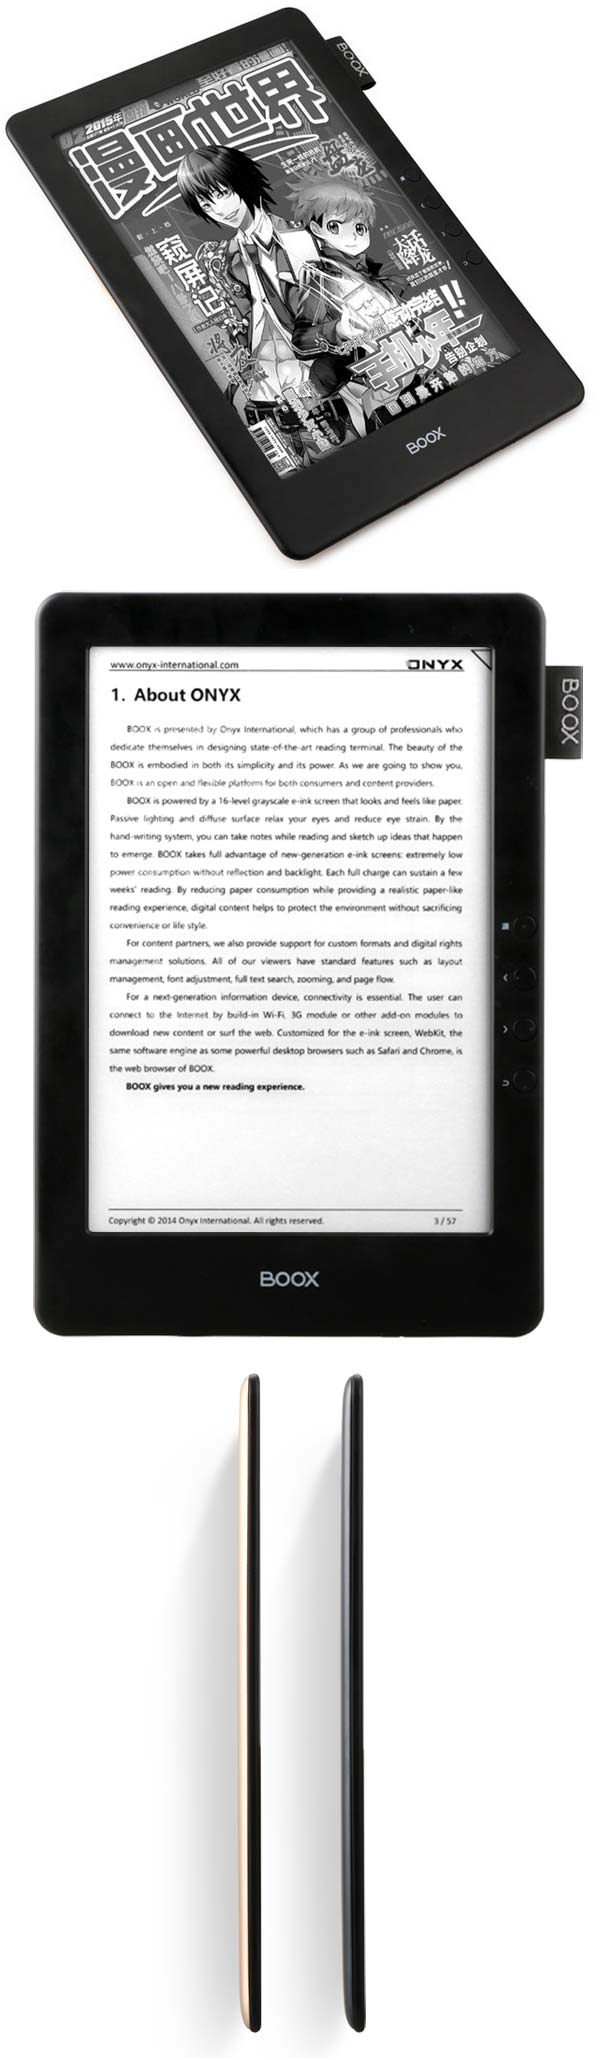 На фото можно найти читалки электронных книг Boox N96 и N96ML от Onyx